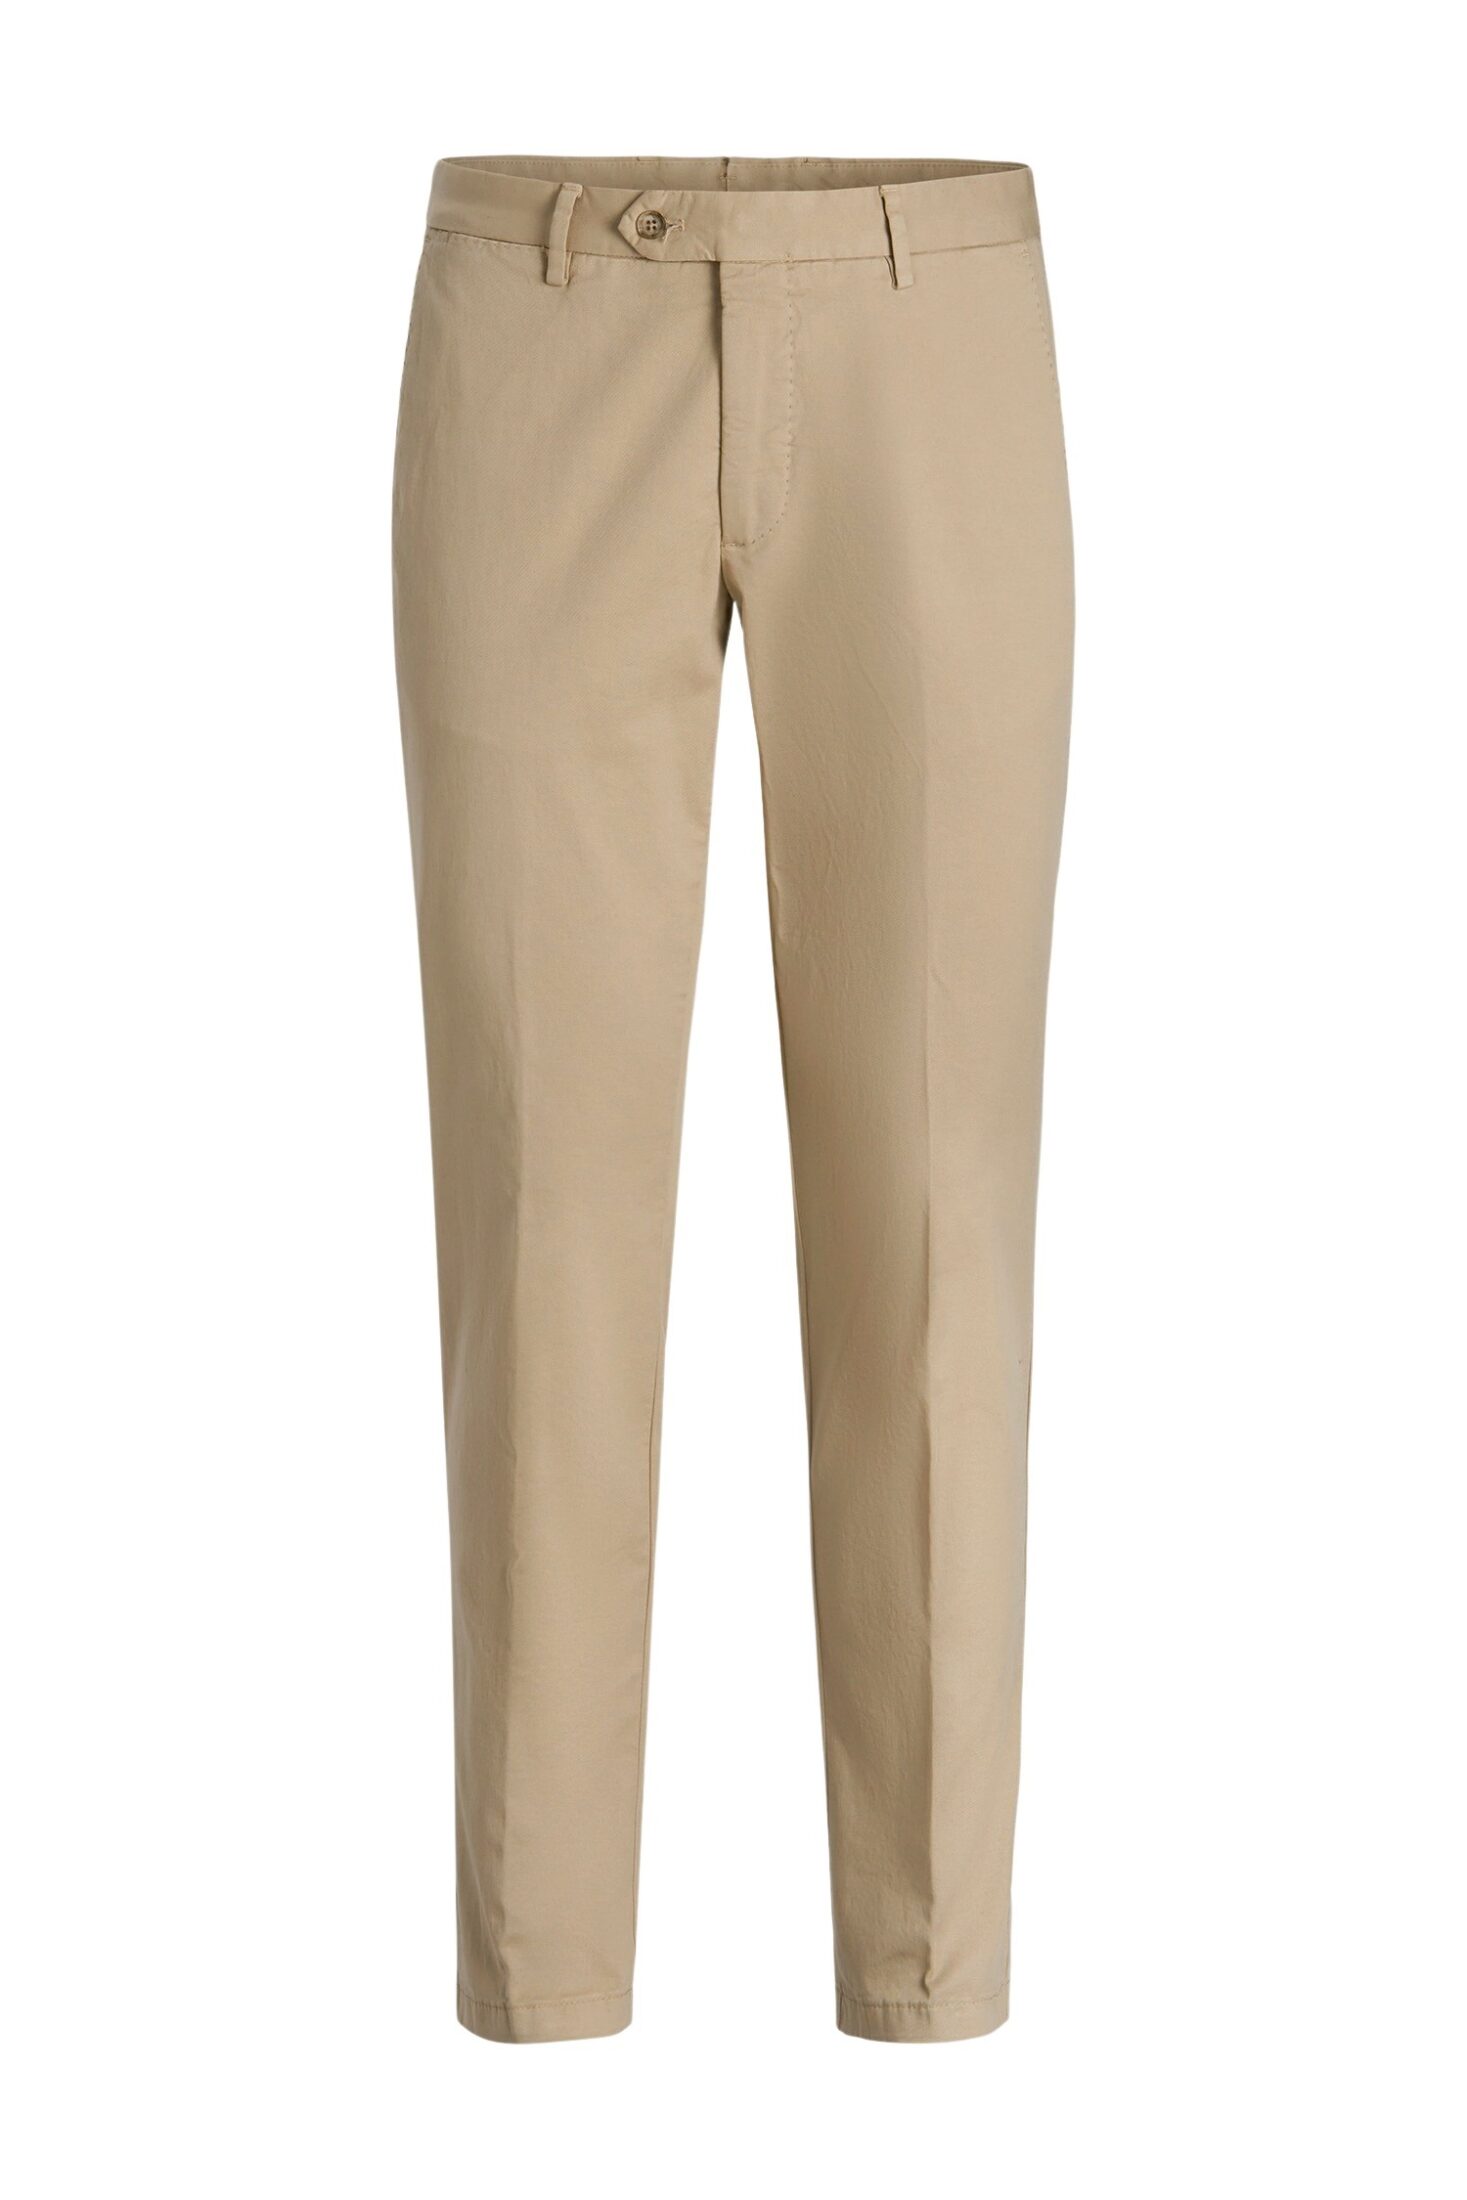 2653_oscar-jacobson_danwick-trousers_51764305_485_front-custom